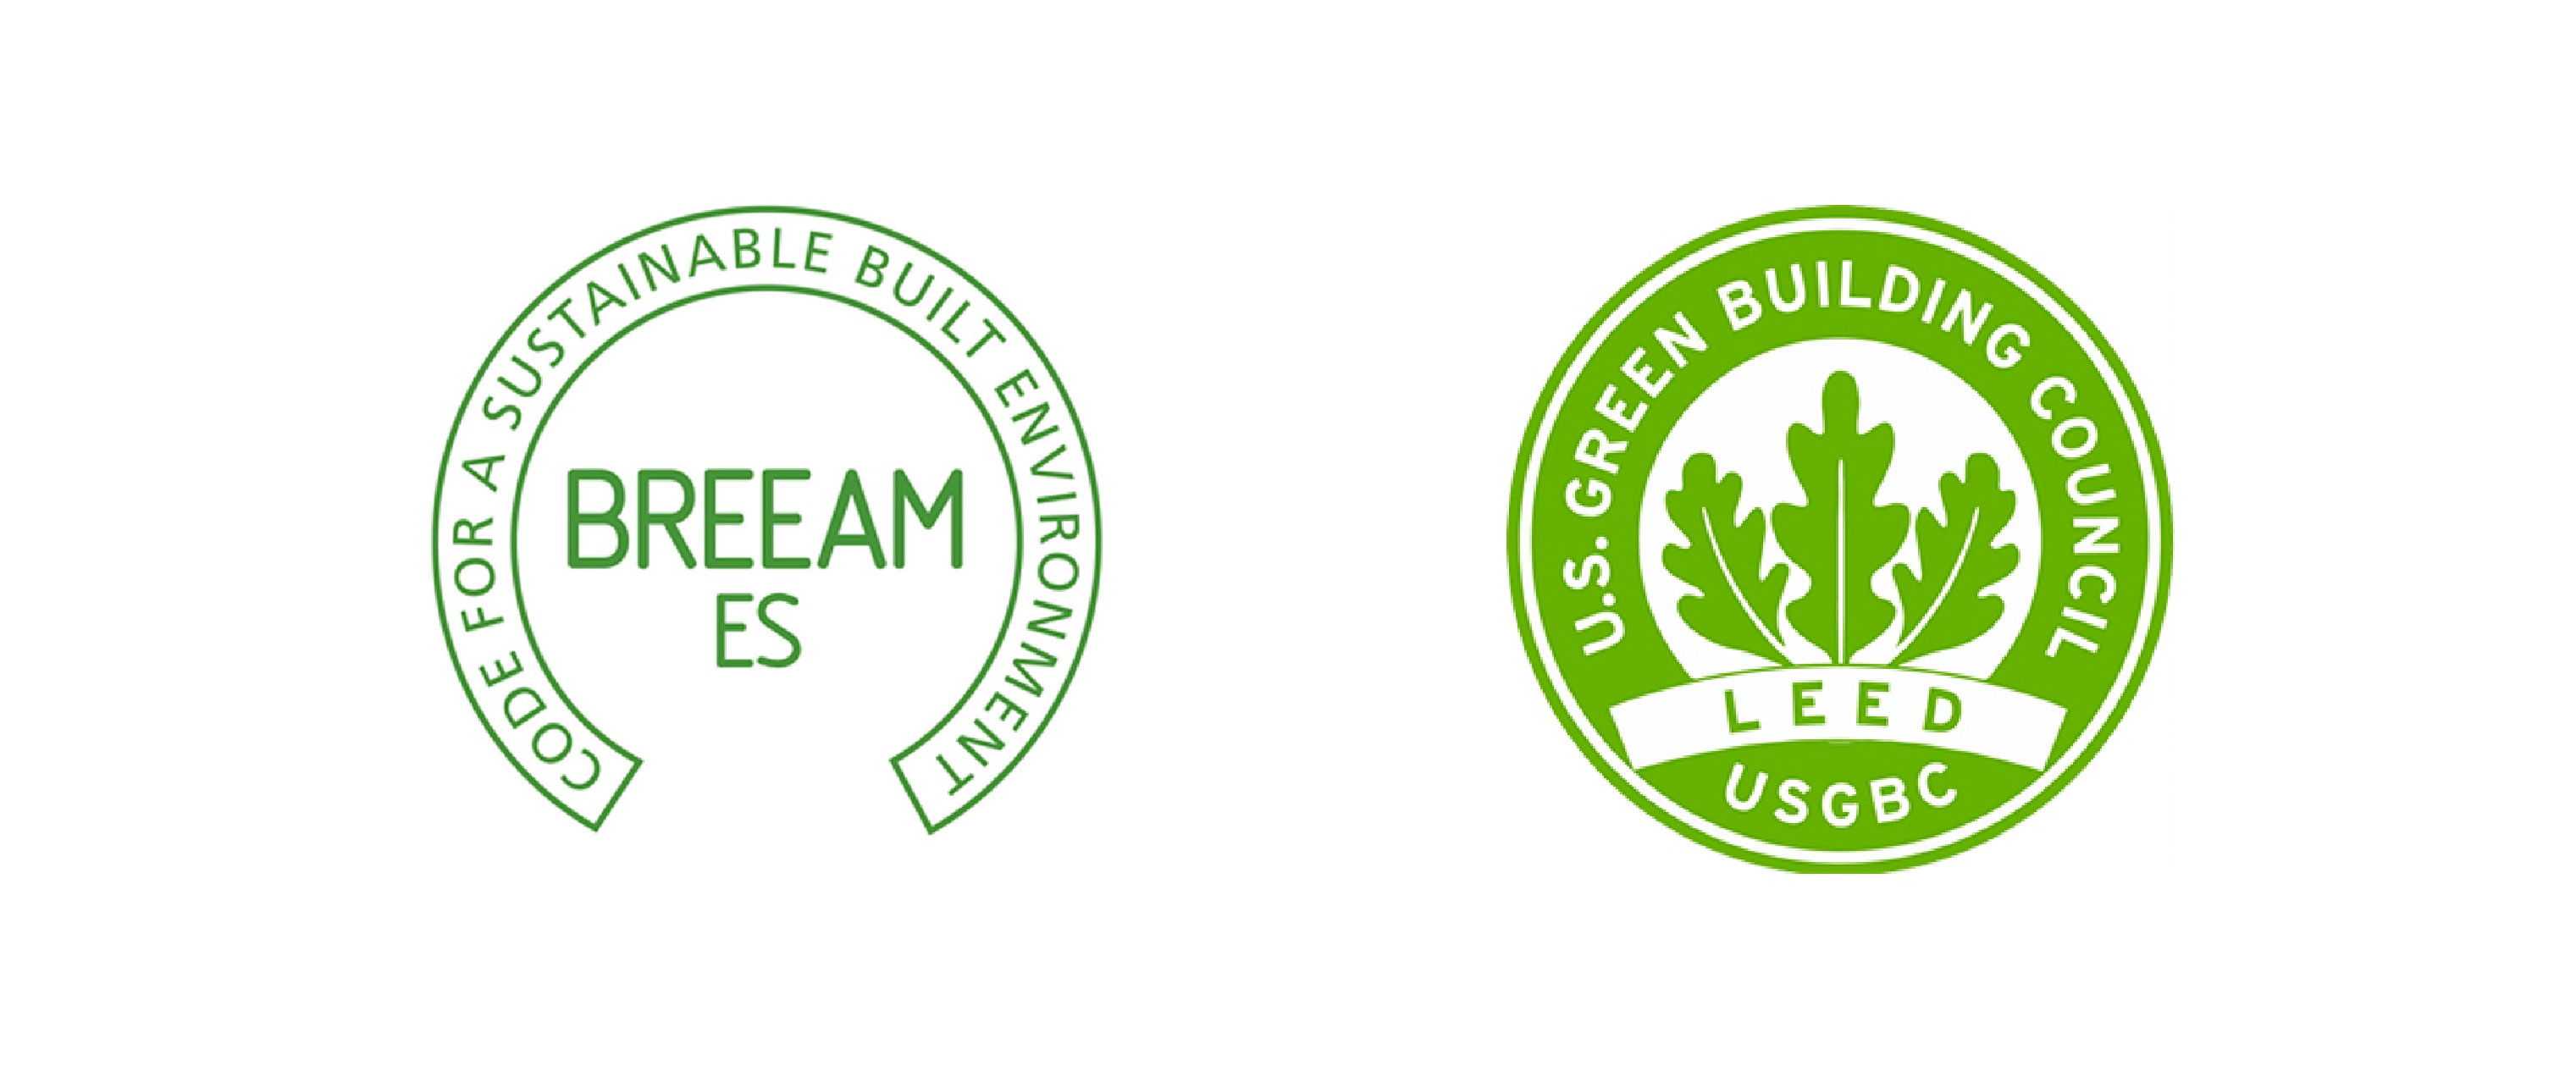 BBVA-certificado-LEED-sostenibilidad-termometro-temperatura-global-construccion-verde-ecologica